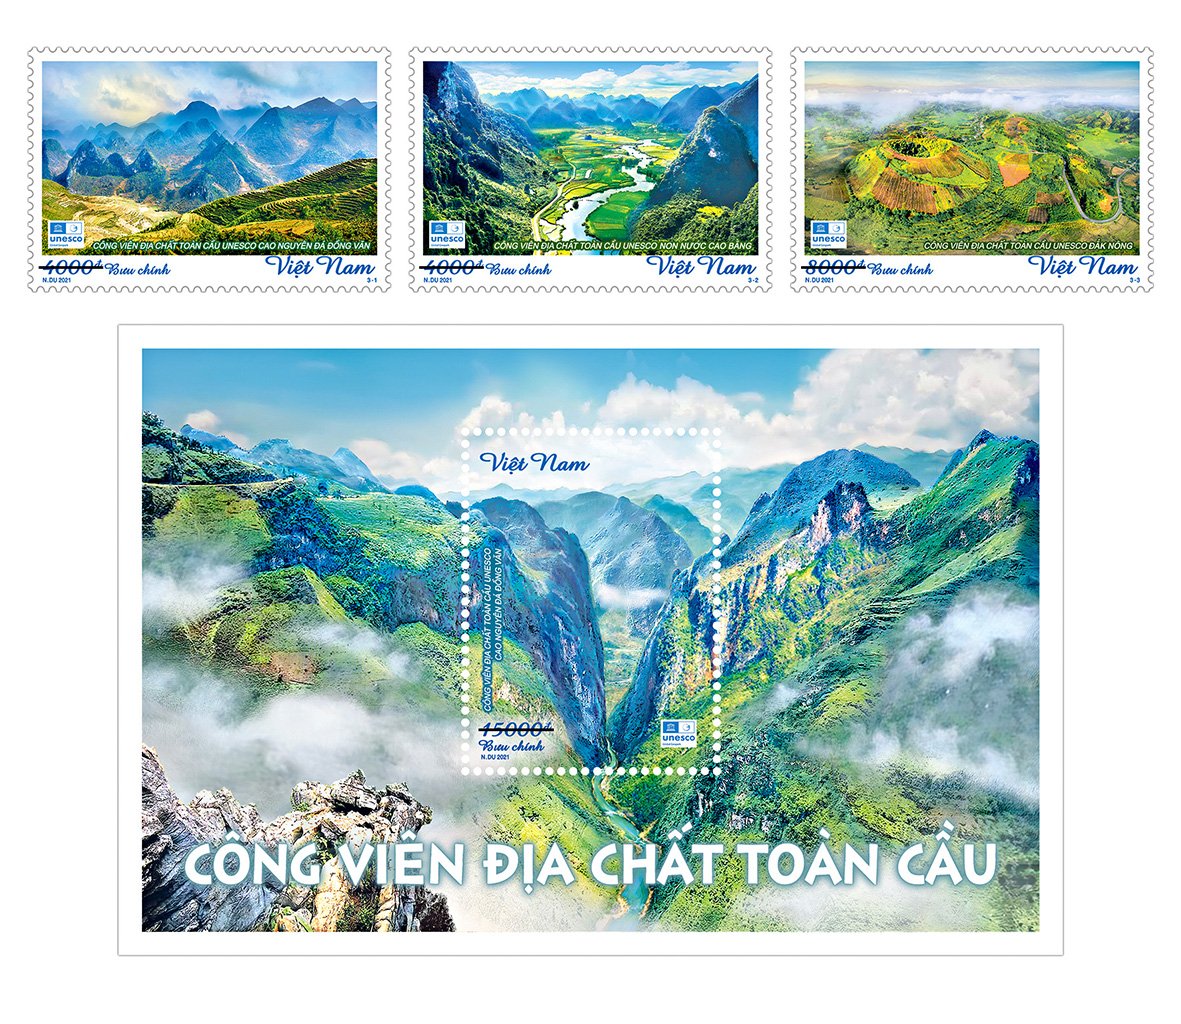 Phát hành bộ tem giới thiệu 'Công viên địa chất toàn cầu' tại Việt Nam